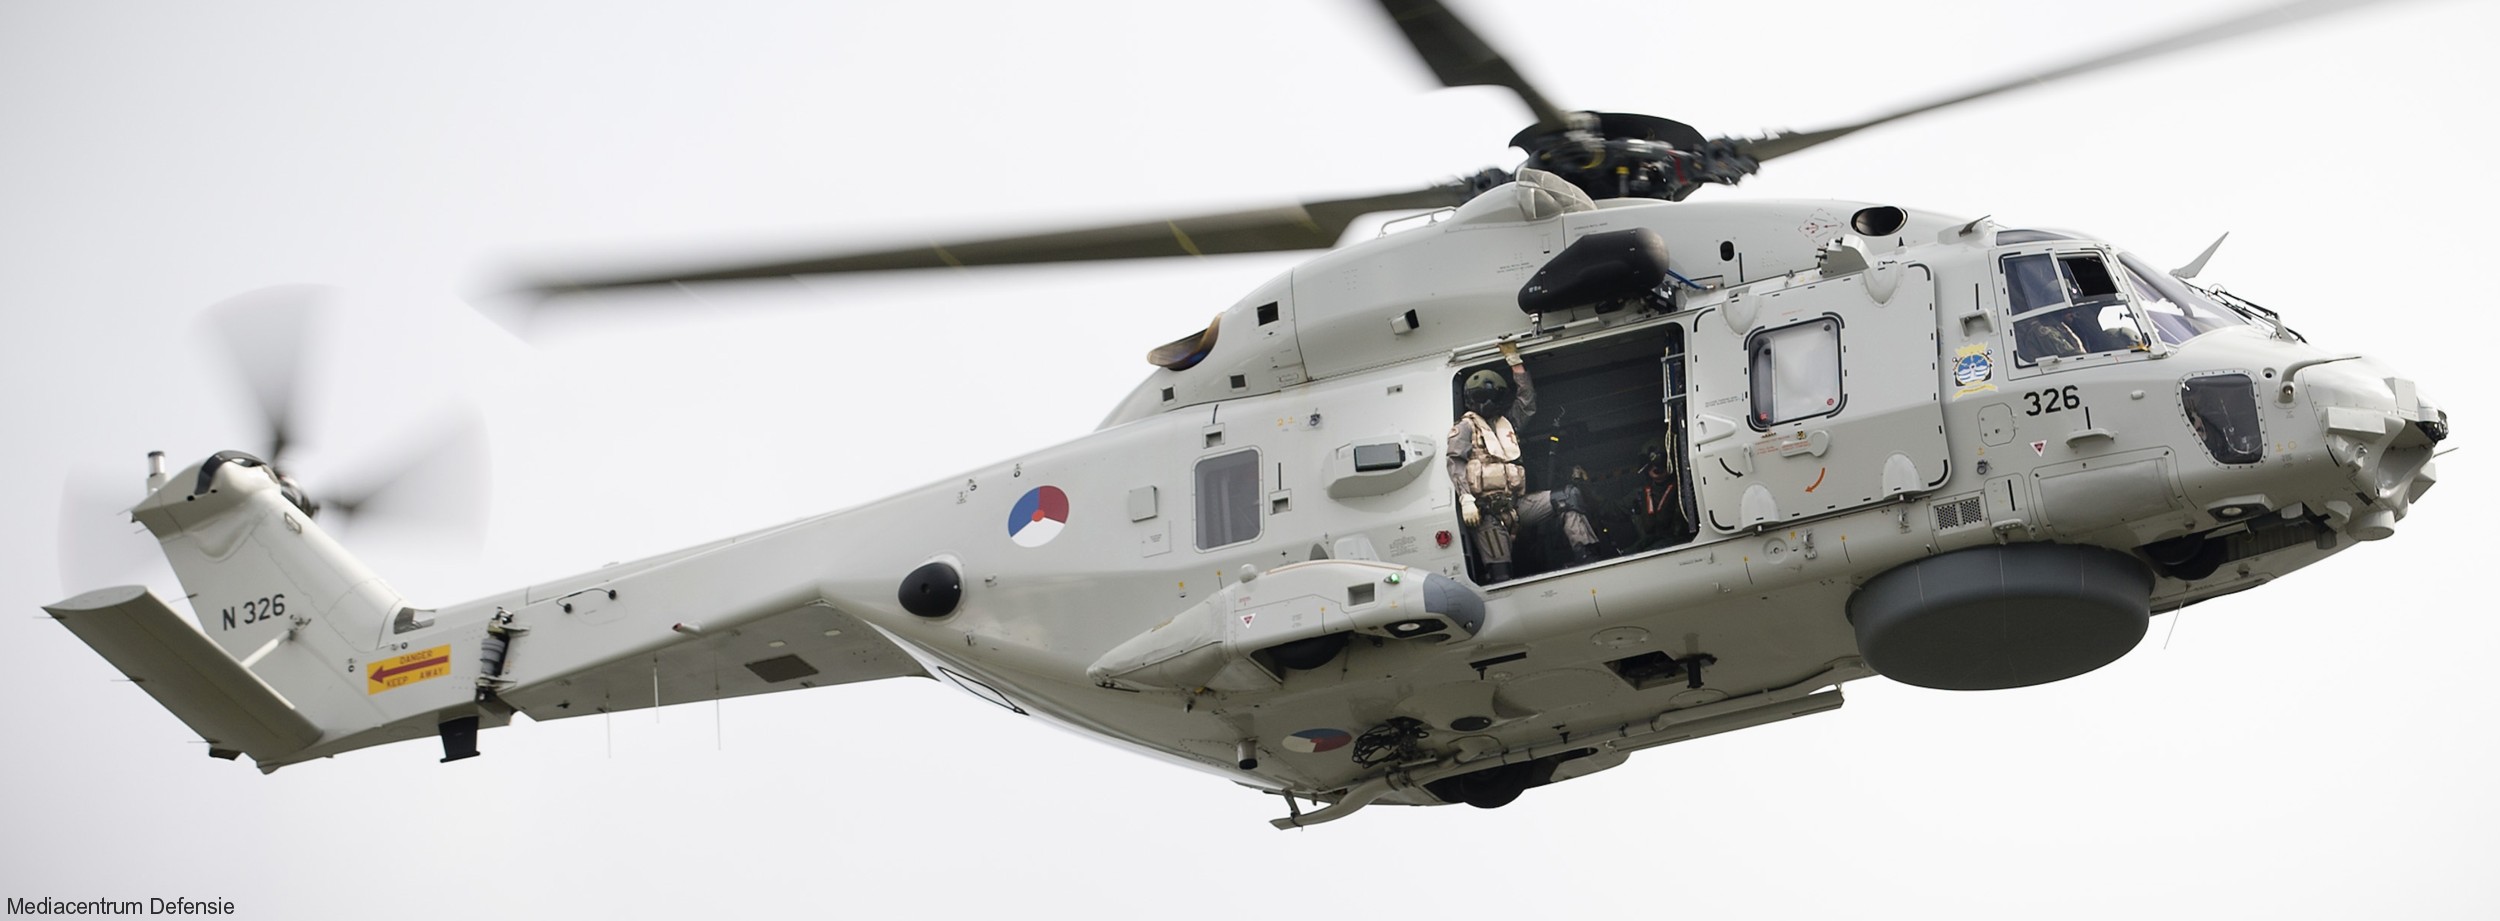 nh90 nfh helicopter royal netherlands navy koninklijke marine n-326 06